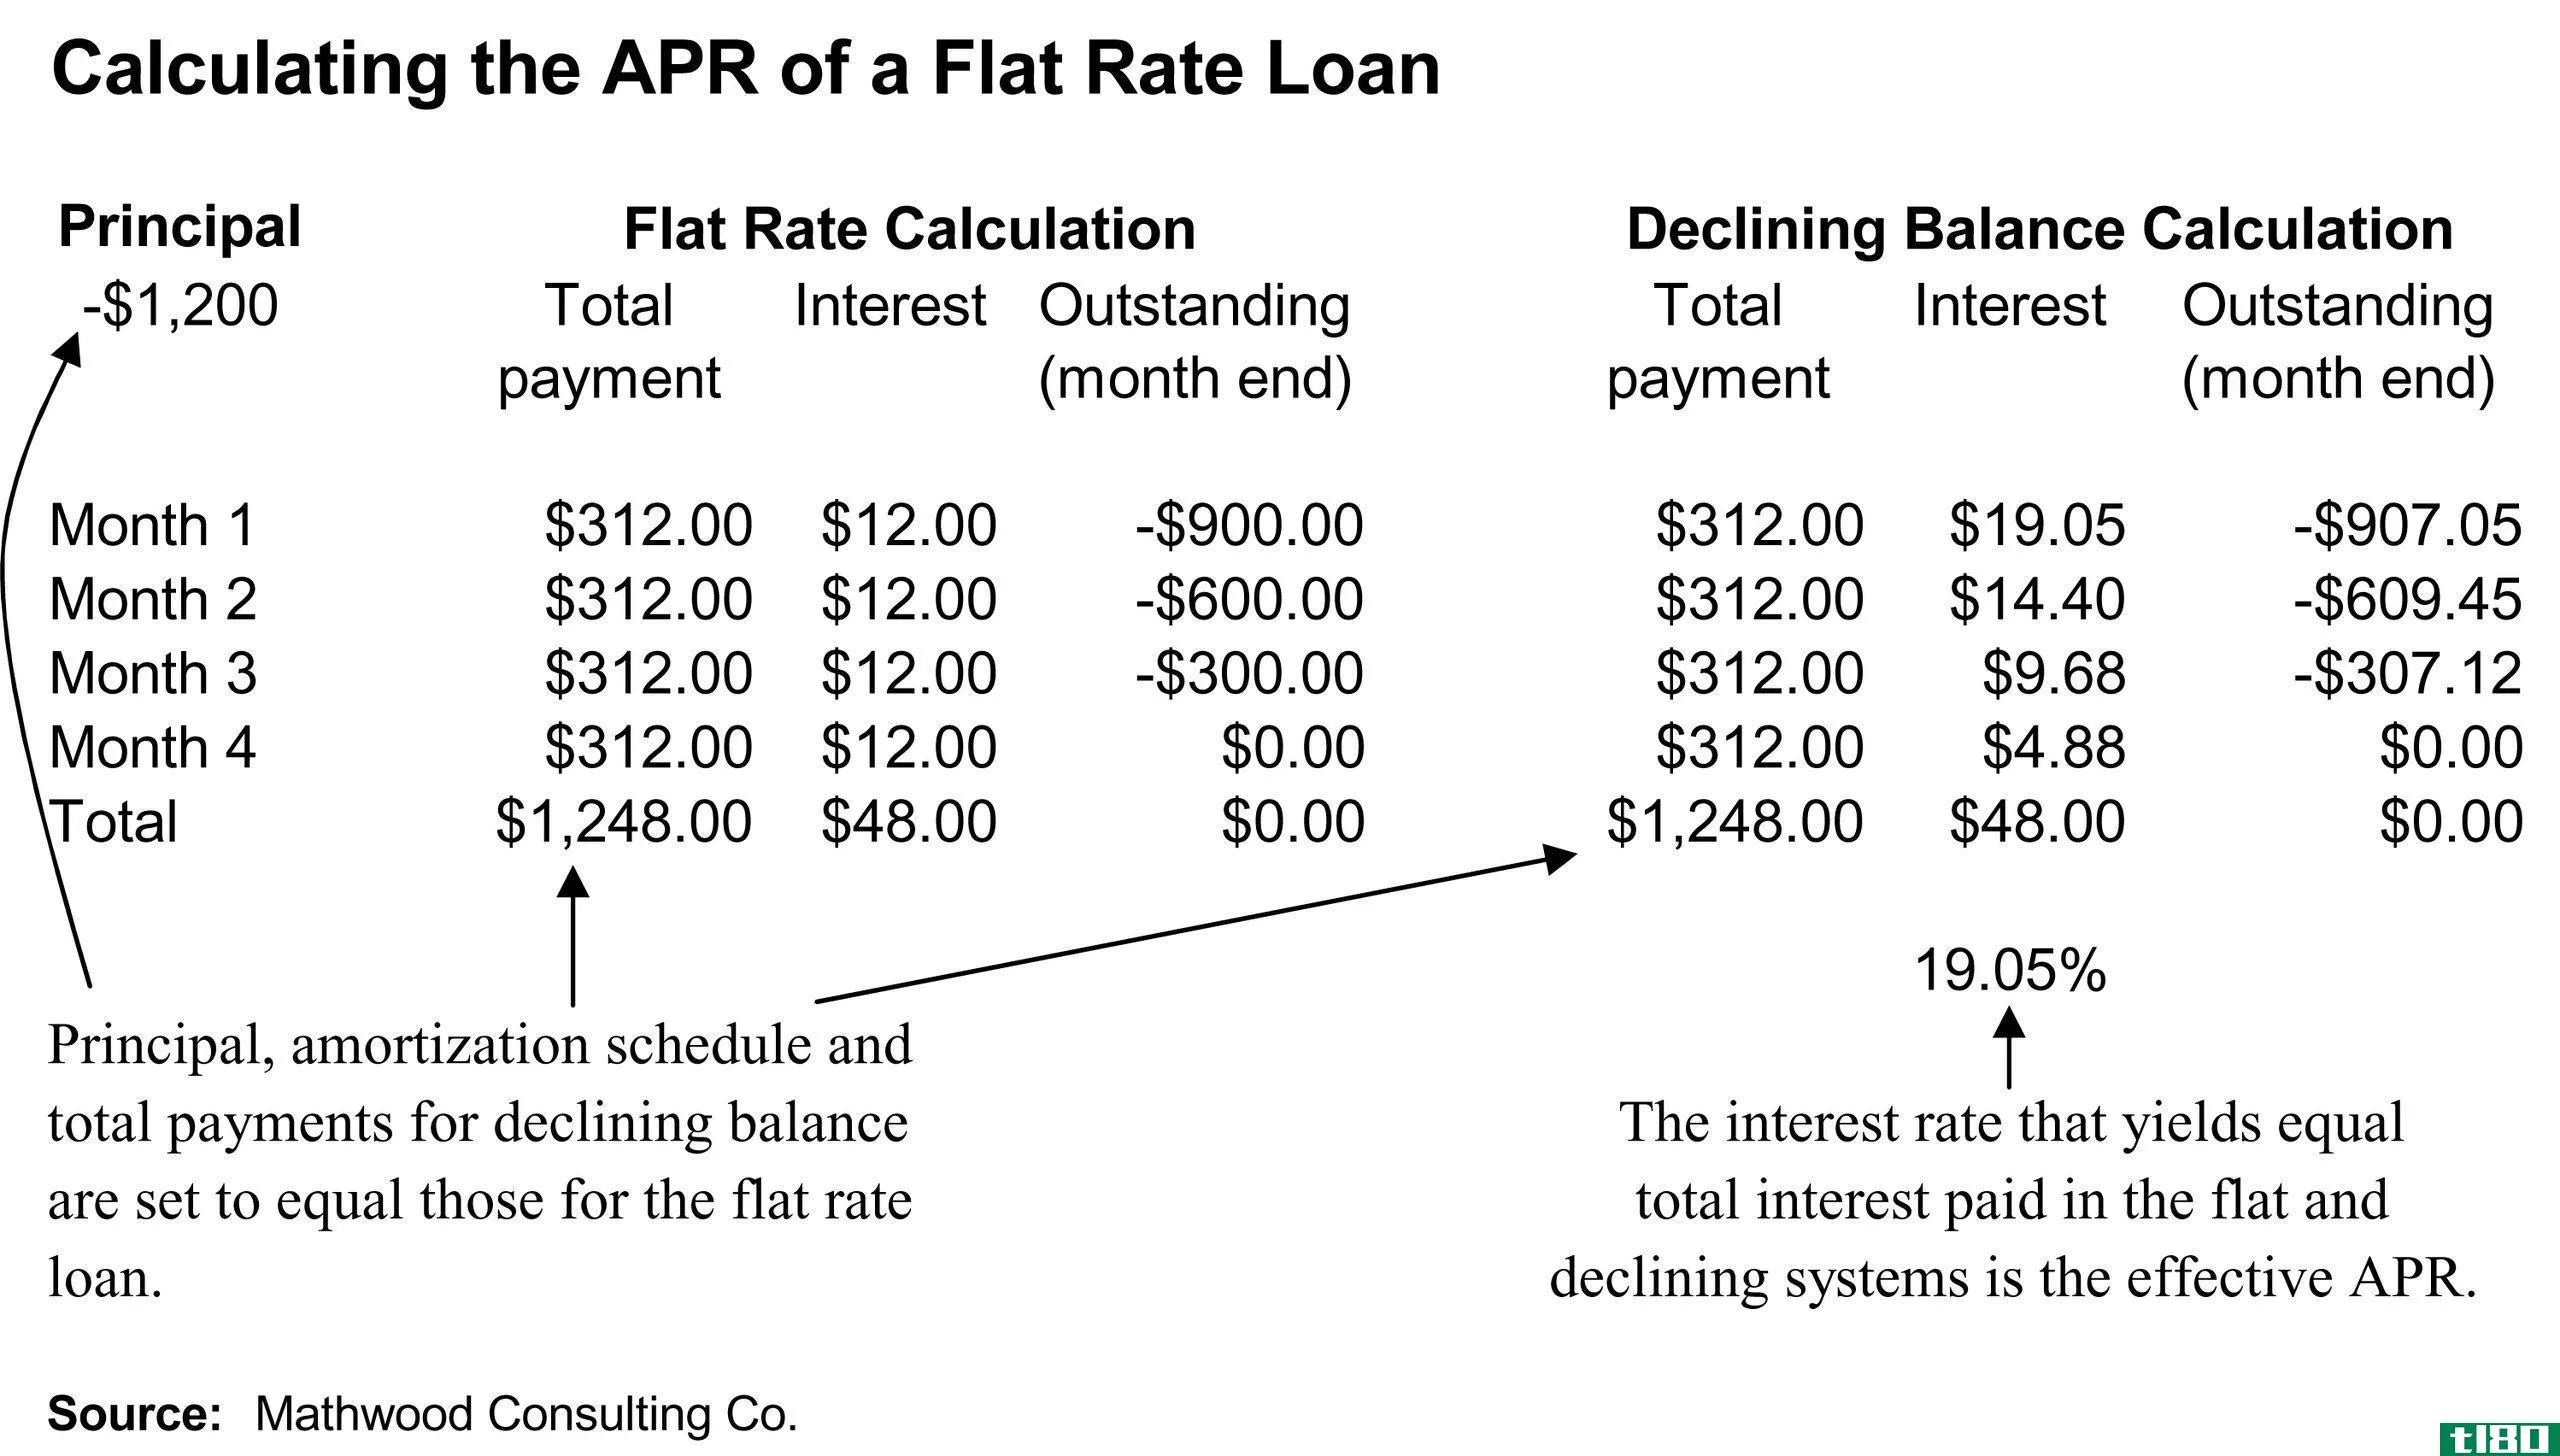 按揭利率差异(differences between mortgage rate)和四月(apr)的区别